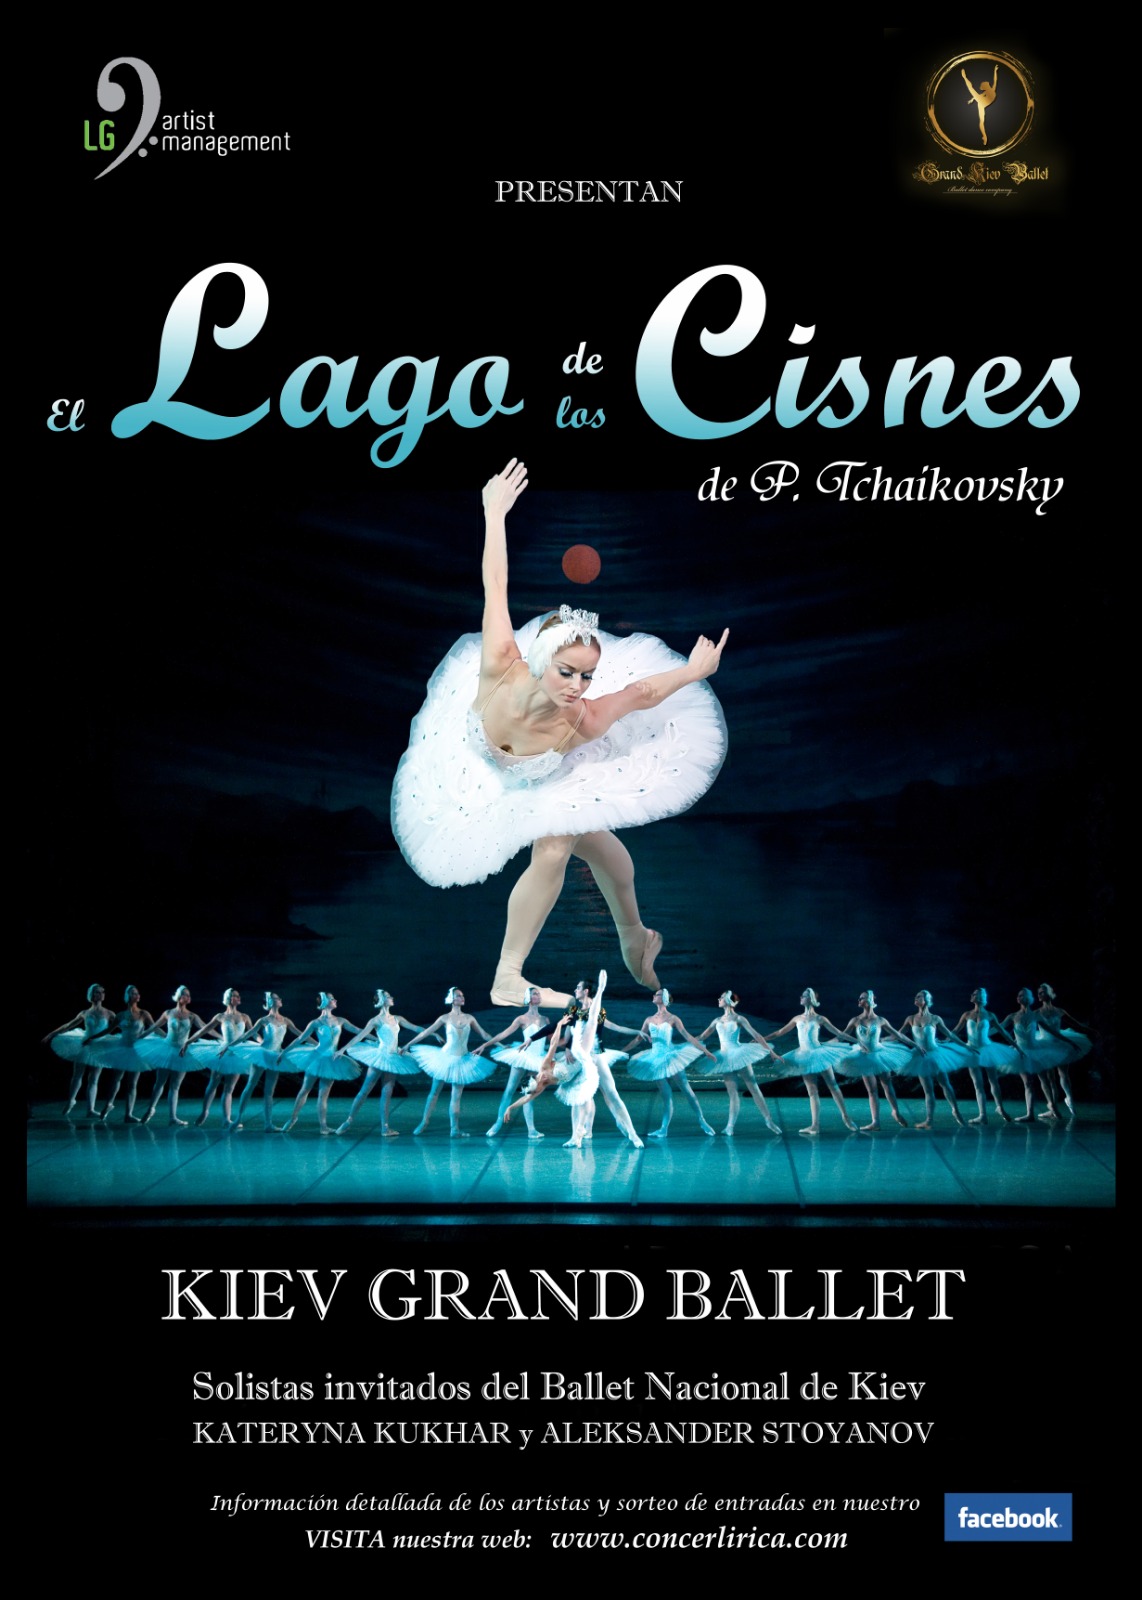 El Kiev Grand Ballet pone en escena “El Lago de los cisnes”de - El Lago De Los Cisnes Tchaikovsky